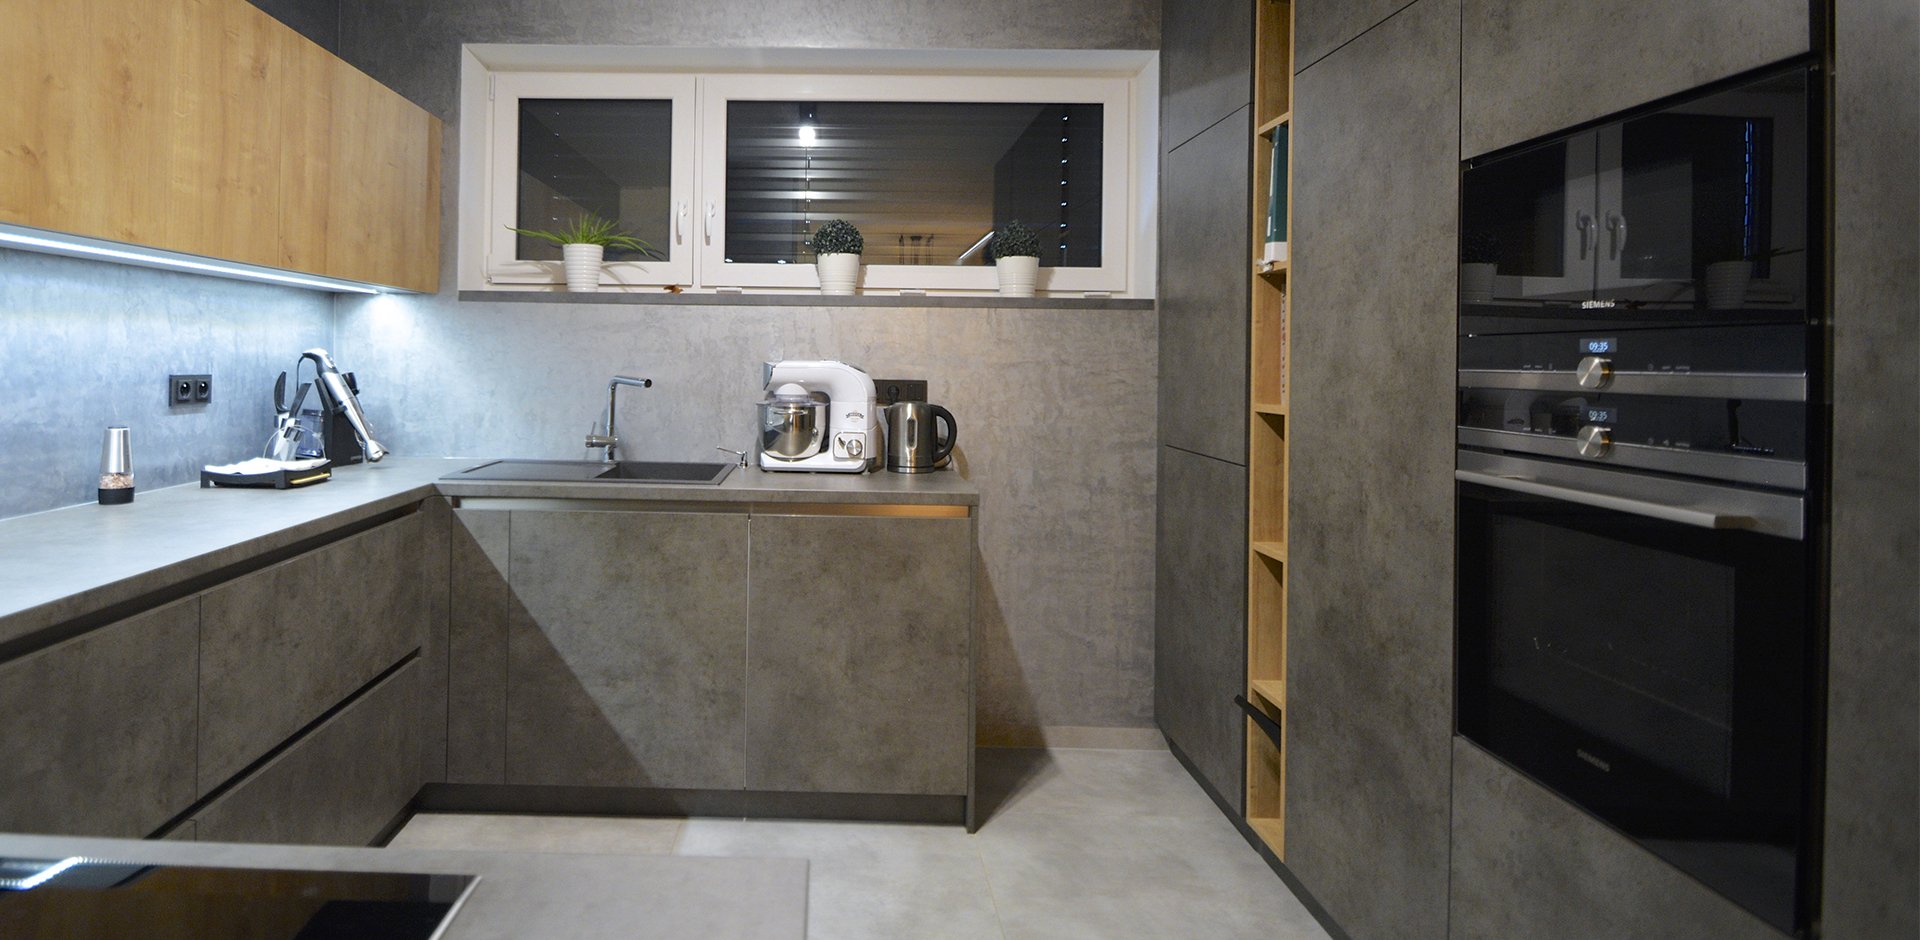 Kuchyně v betonu - 2